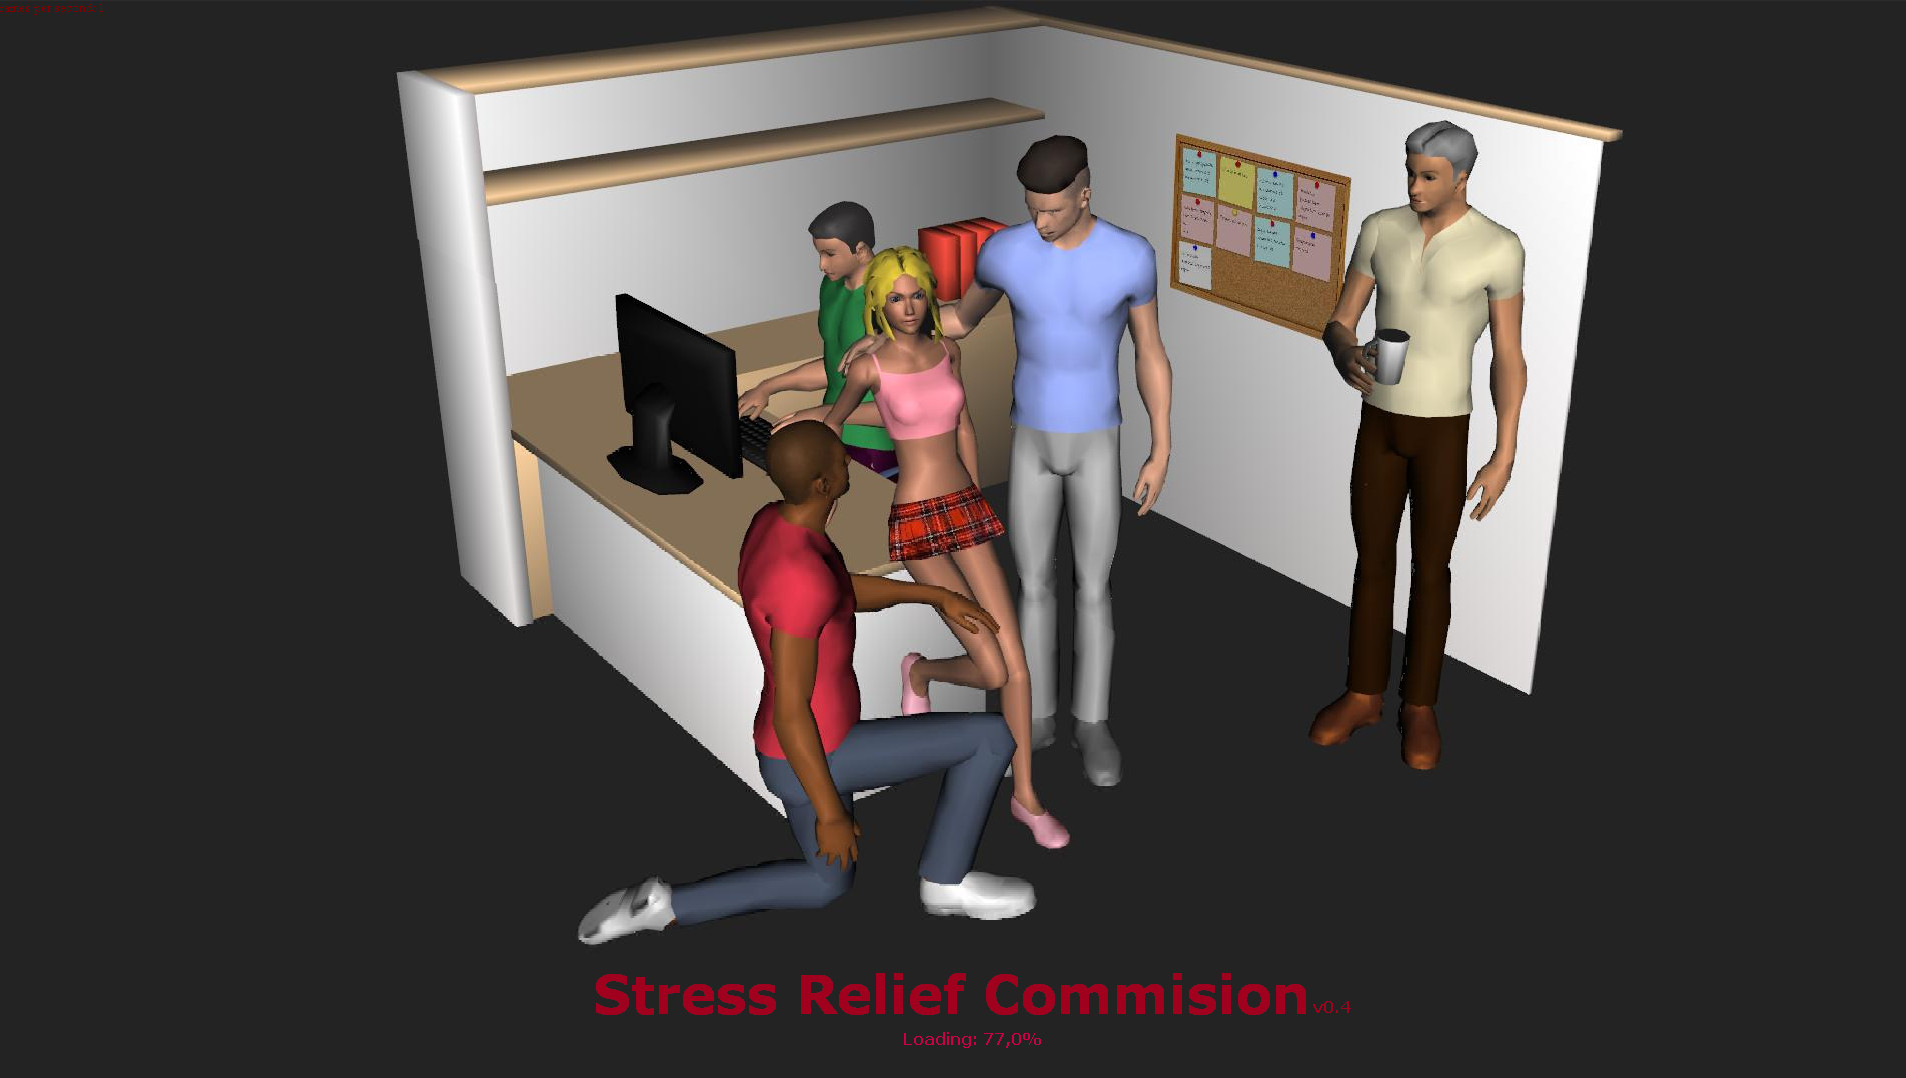 Stress Relief Commision v0.4 from Velesk